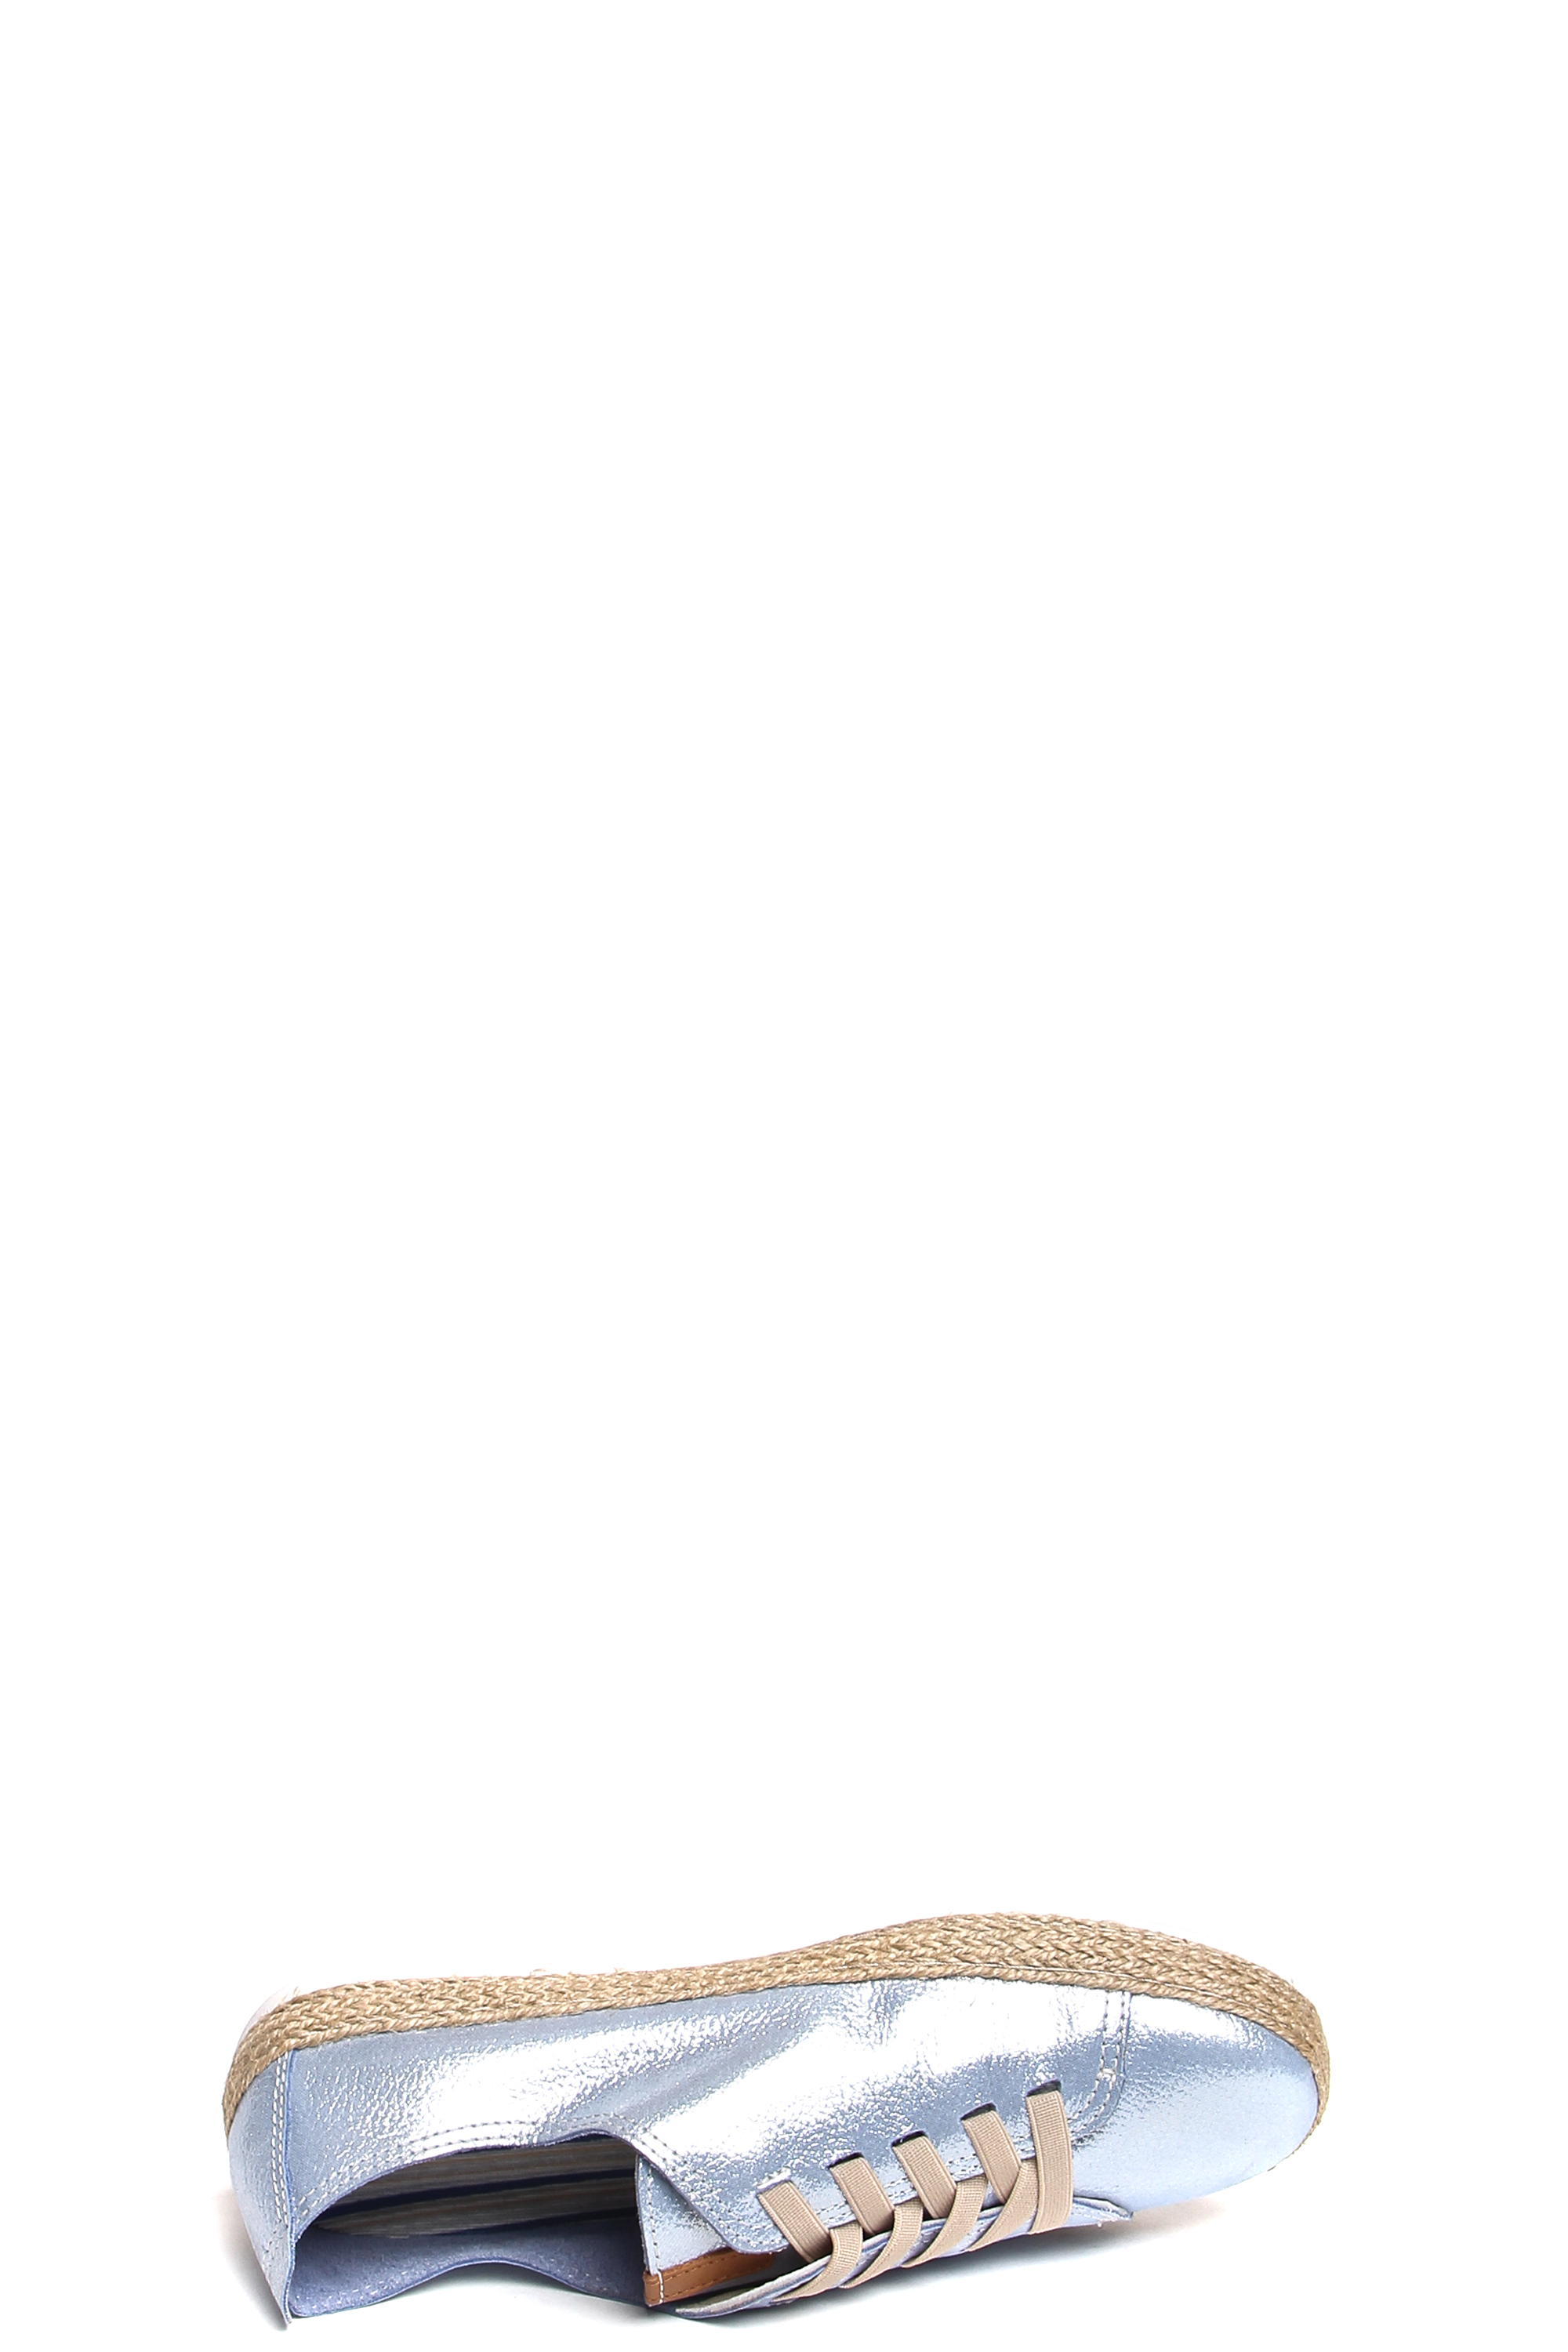 181570-1-2531 полуботинки  взрослый  жен. летн. натуральная кожа (велюр; сотен)/без подкладки/термоэ